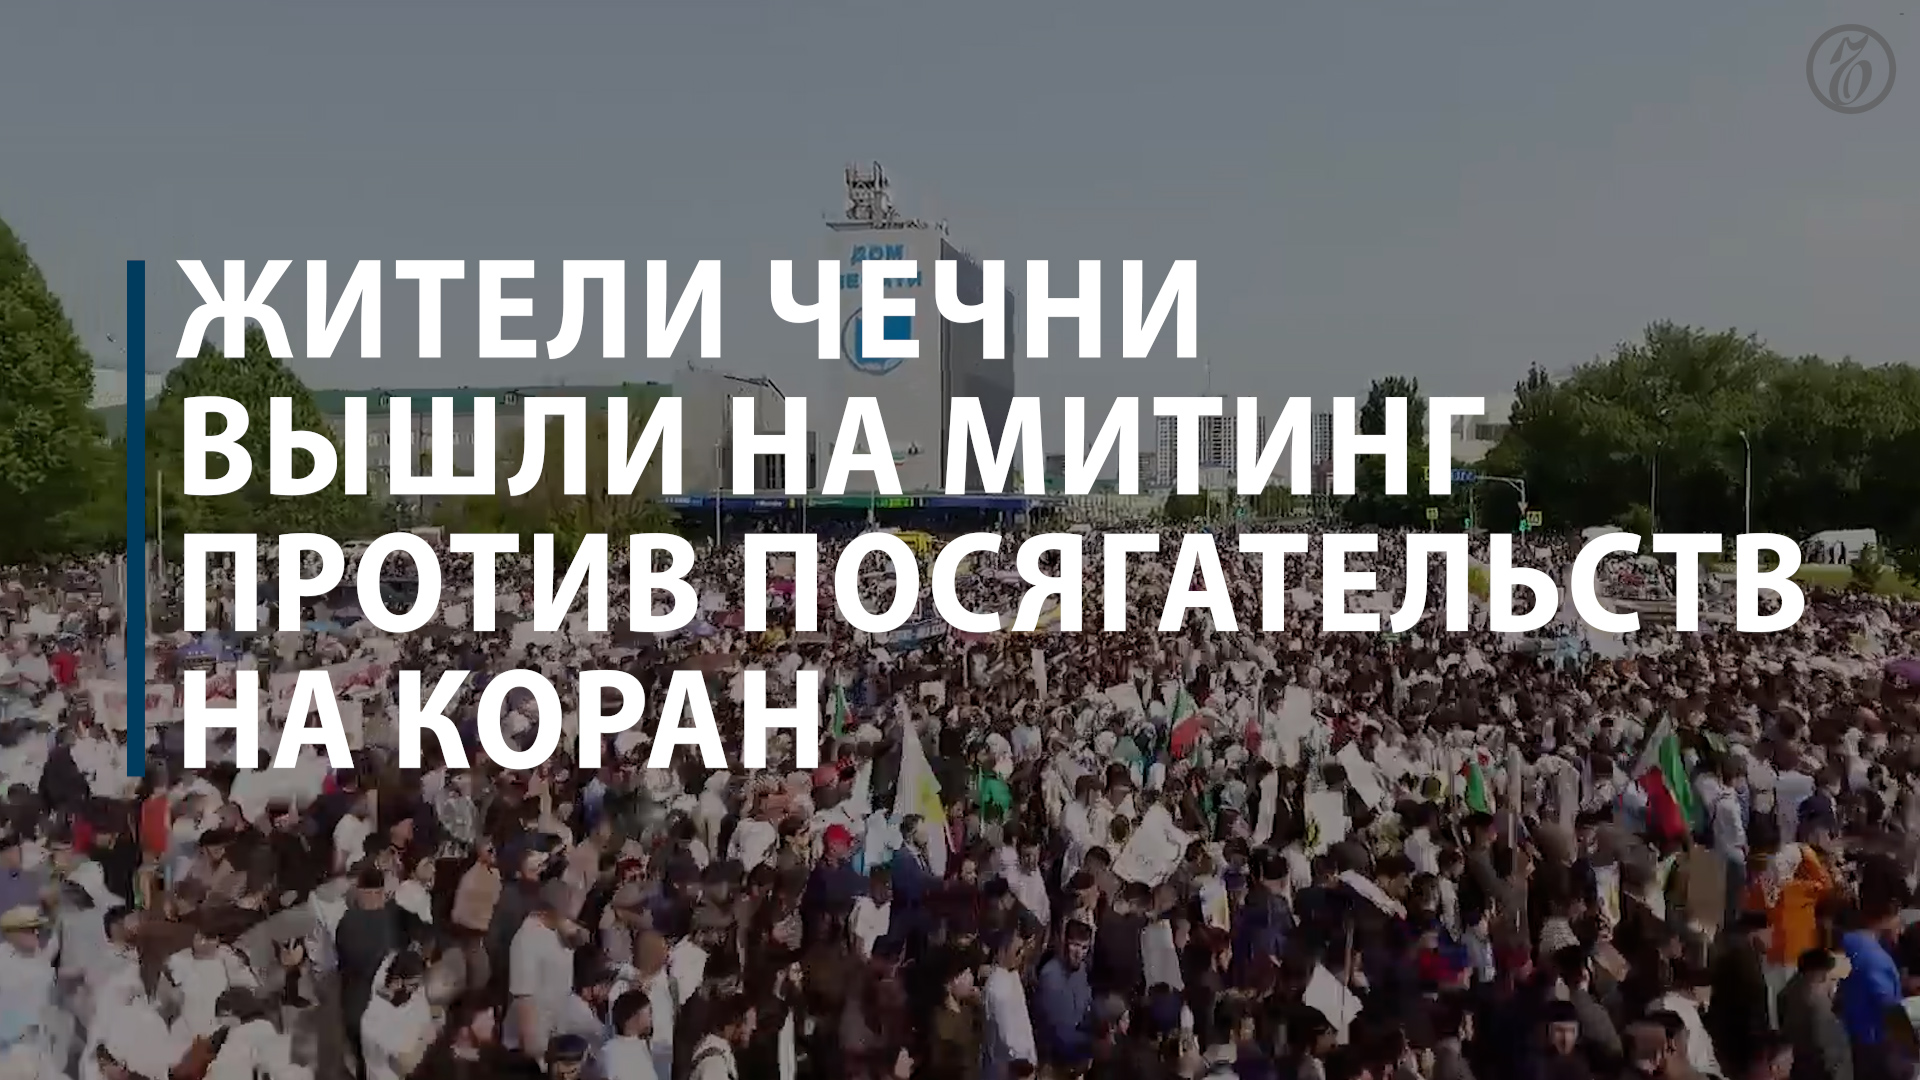 Жители Чечни вышли на митинг против посягательств на Коран